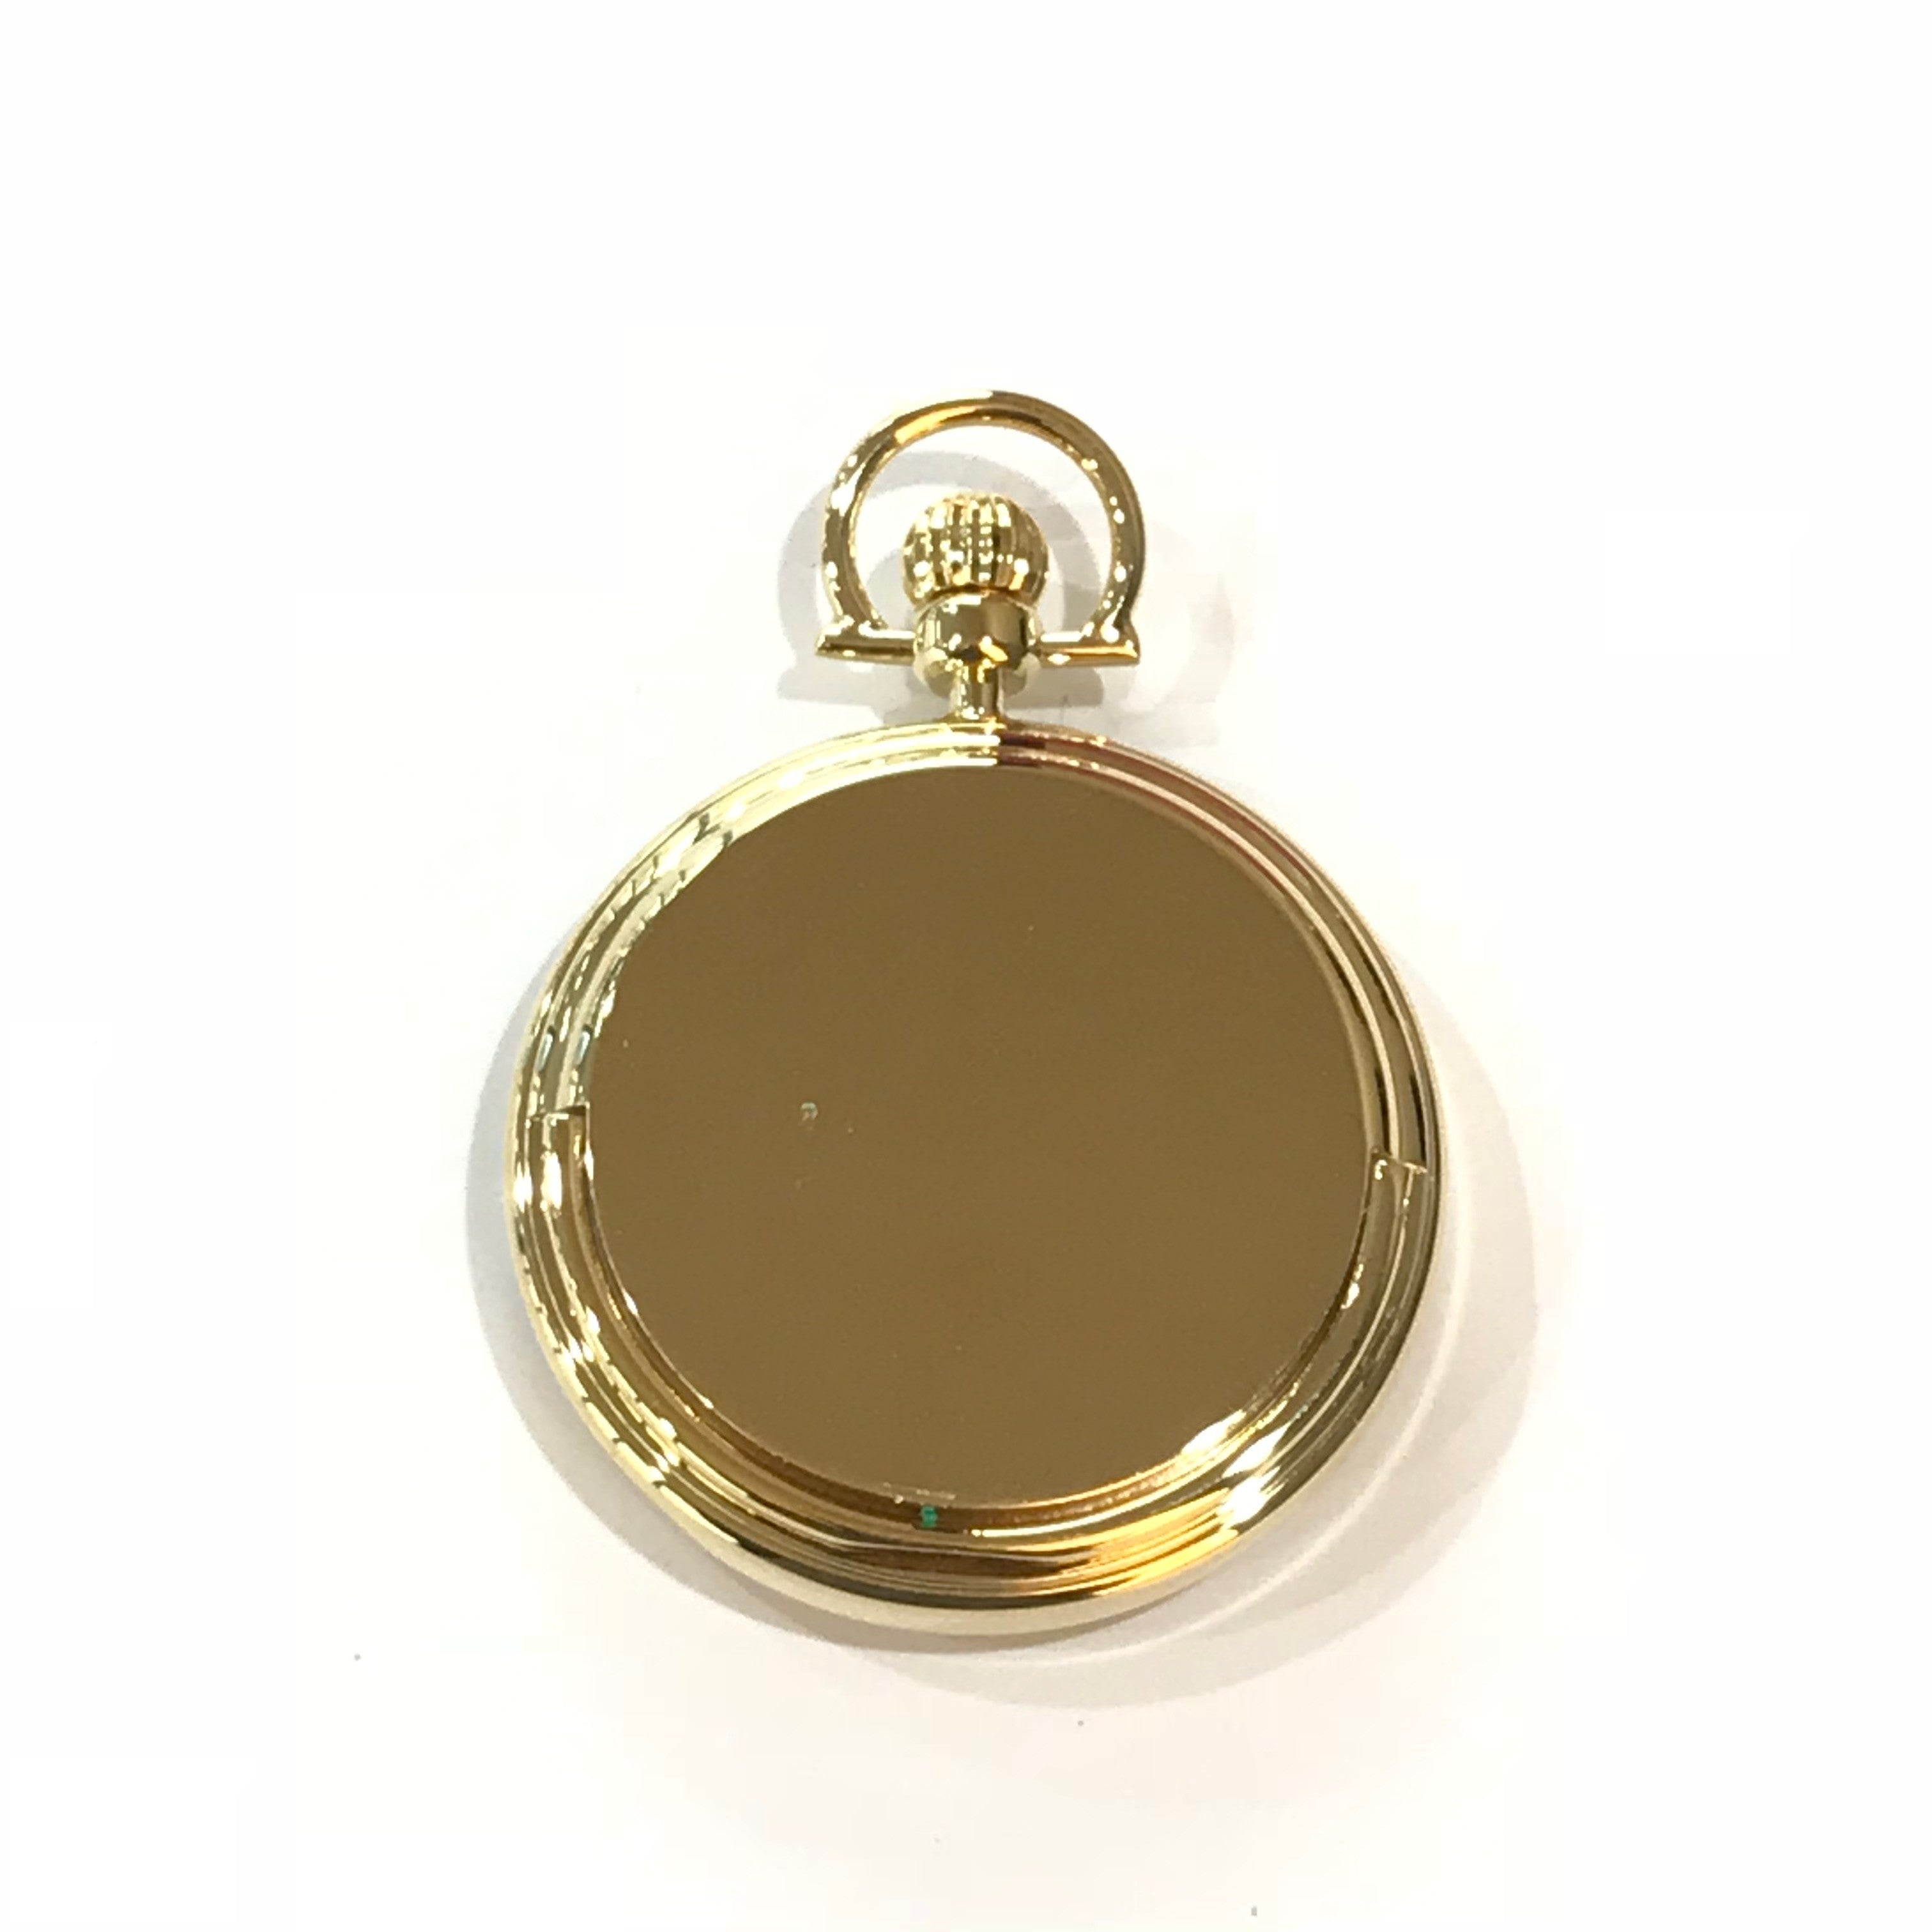 Pryngeps orologio da tasca Old Time 46mm laminato oro giallo T046 BLU - Gioielleria Capodagli